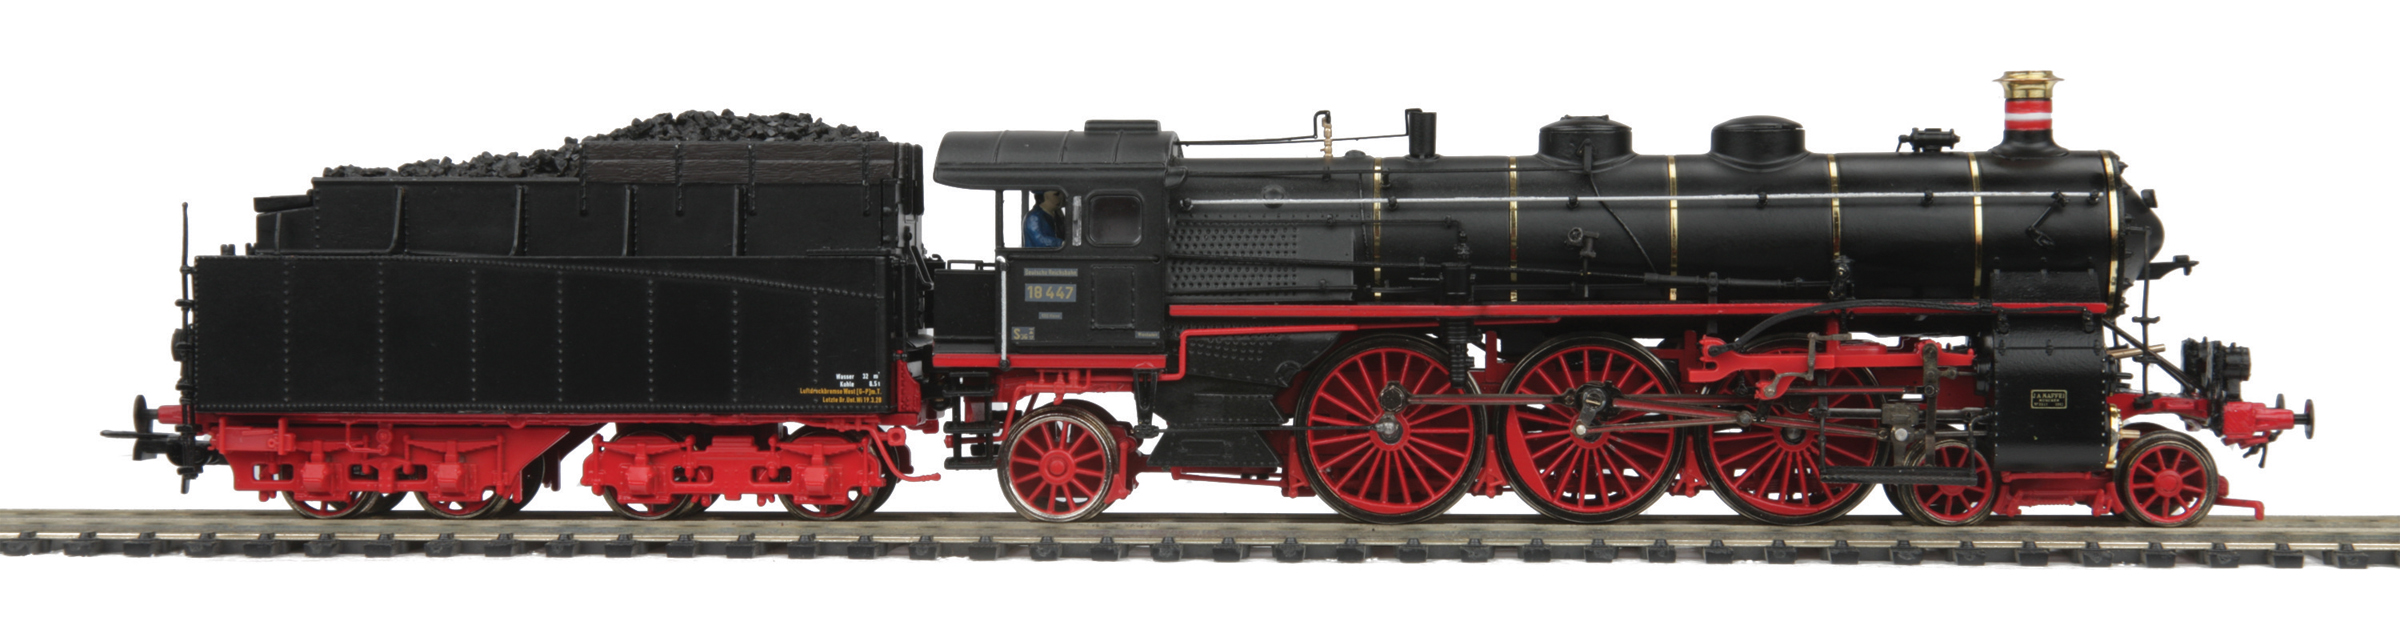 Item No. 80-3218-1 Deutsche Reichsbahn Class 18.4 Steam Locomotive w 